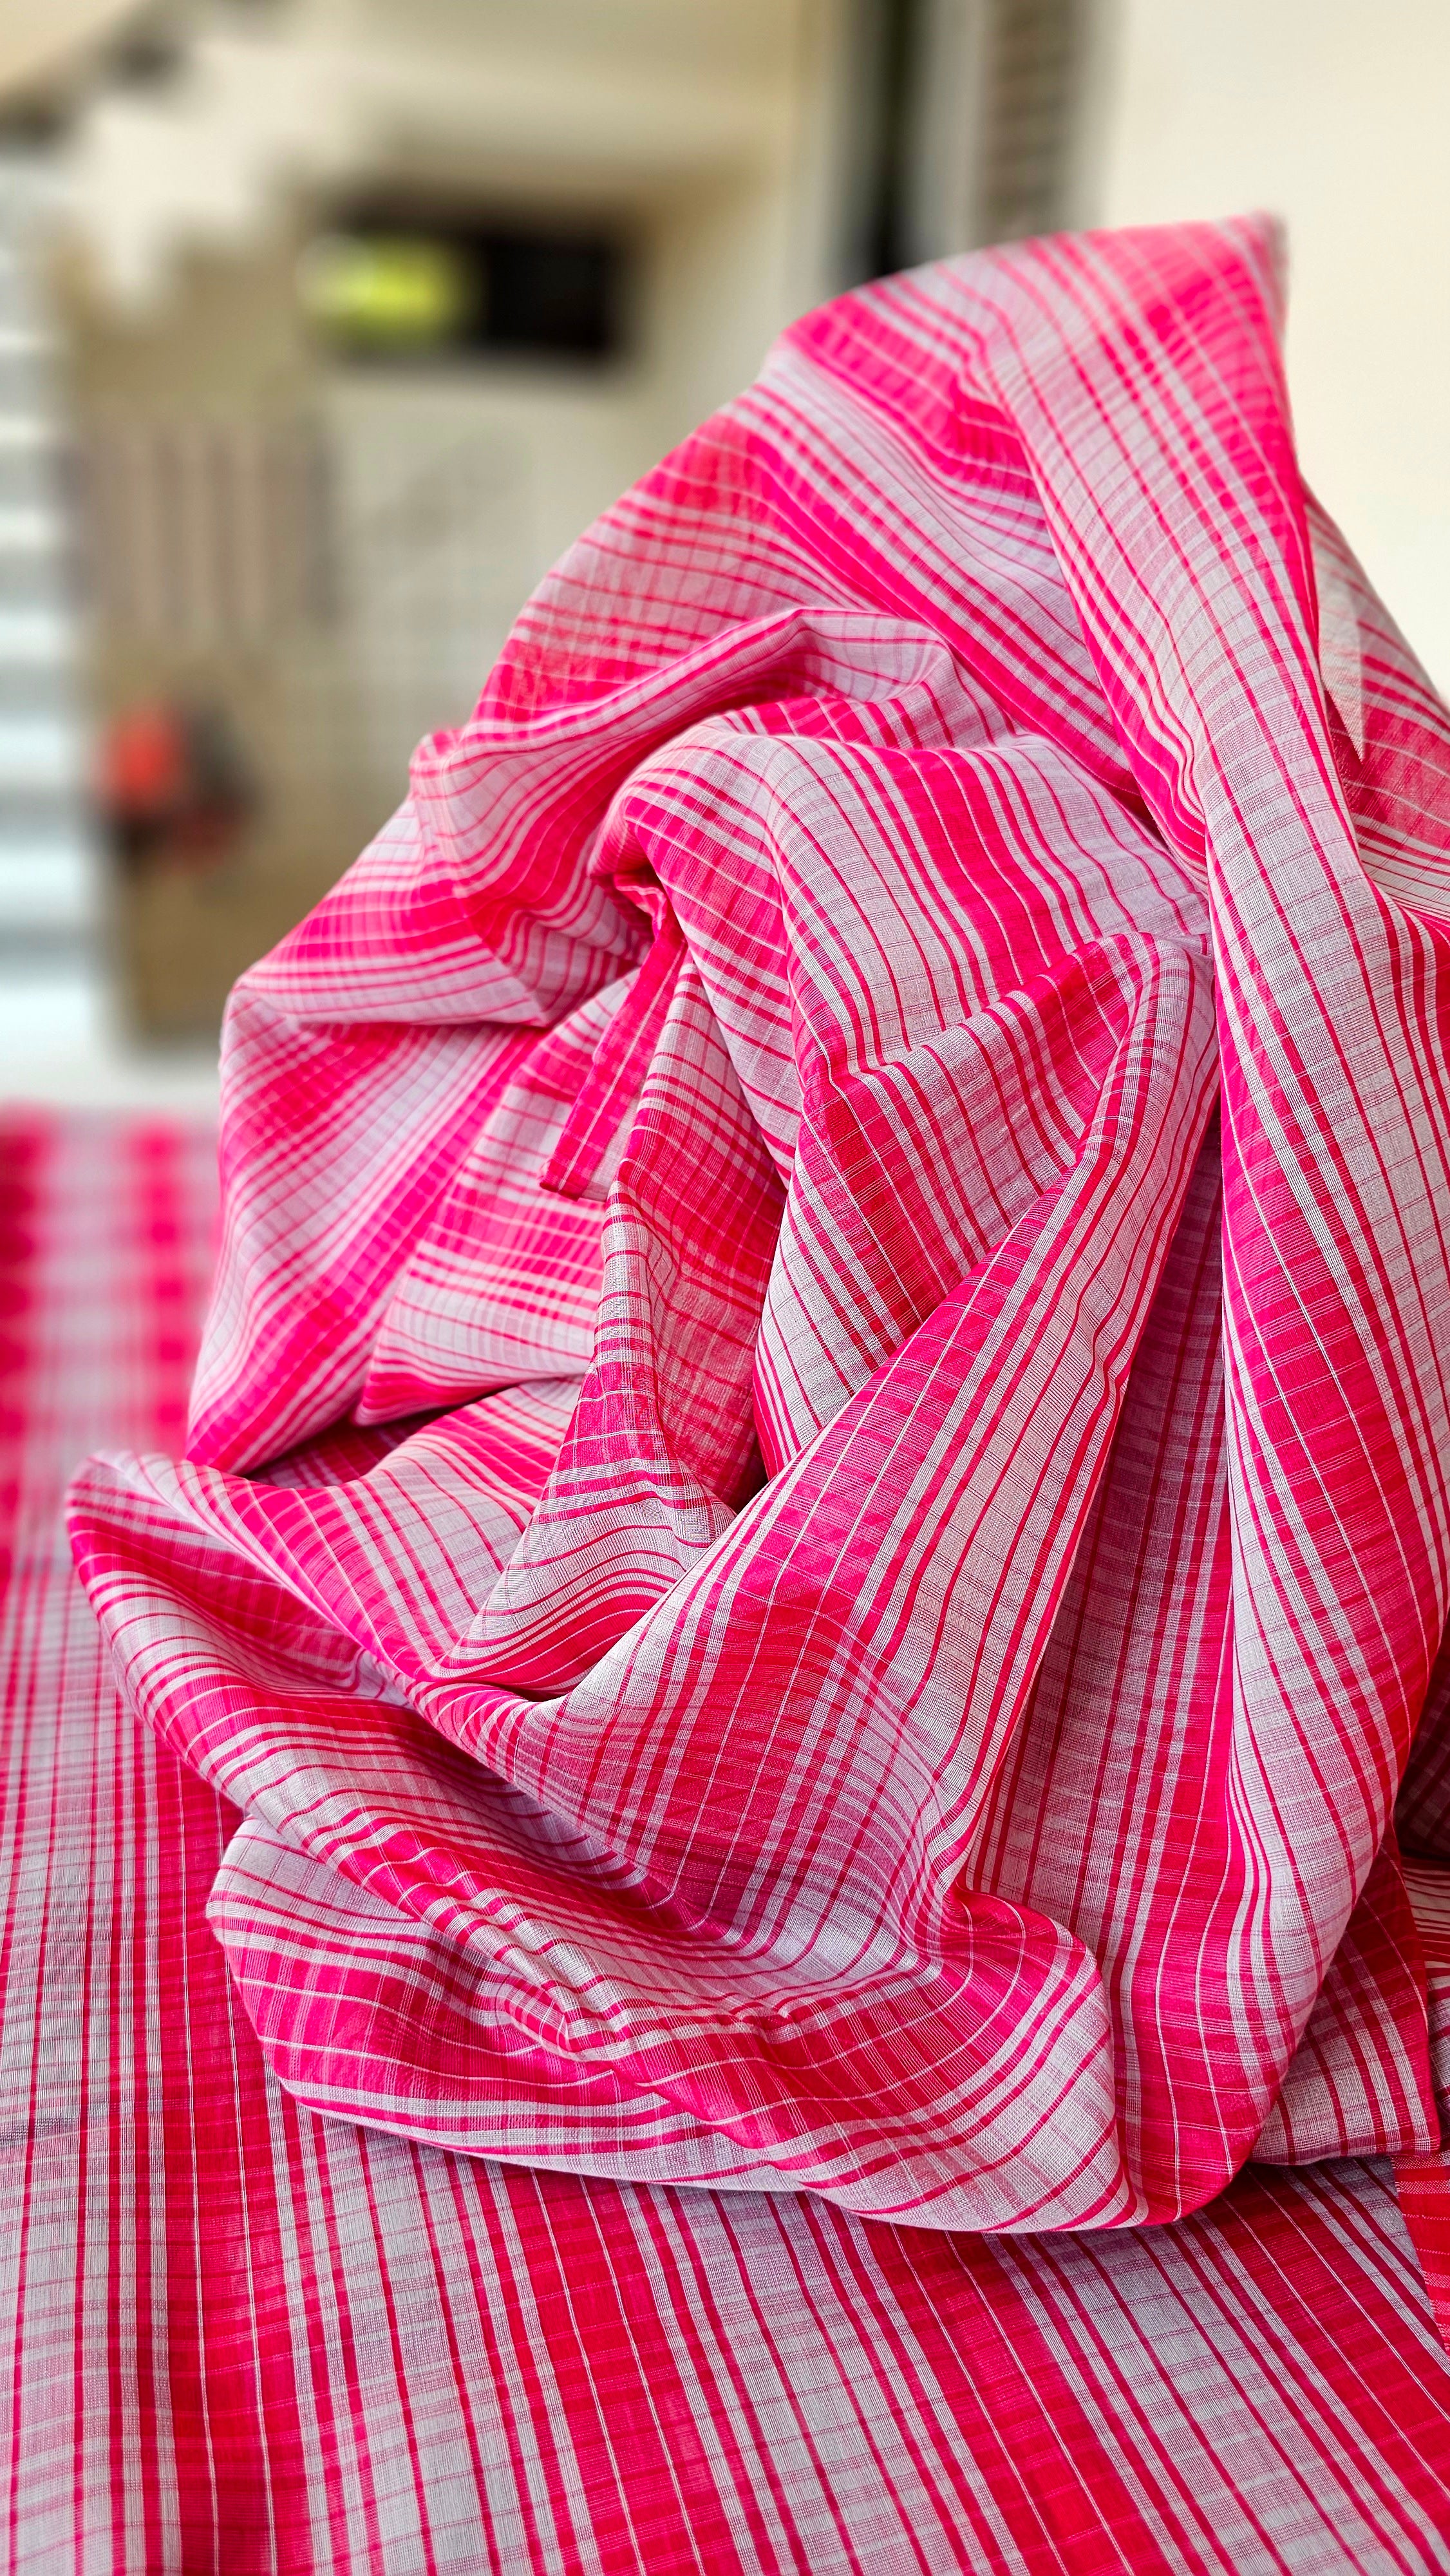 Grey and Pink Checks running Fabrics.